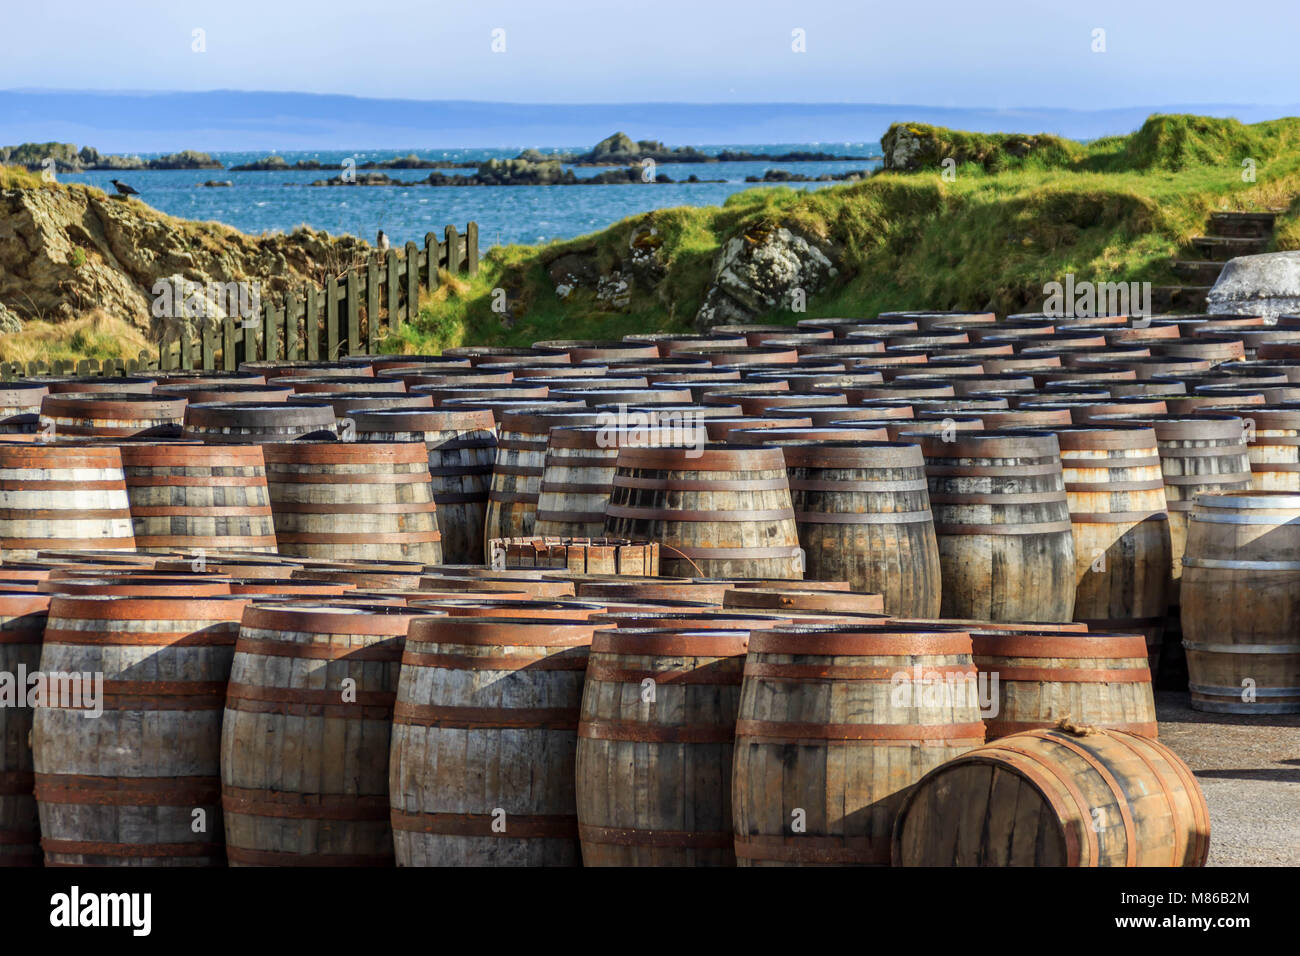 Reihen von Islay Whisky Fässern, gestapelt am Wasser in einer Scotch Distillery auf der Insel Islay, Schottland, Großbritannien Stockfoto